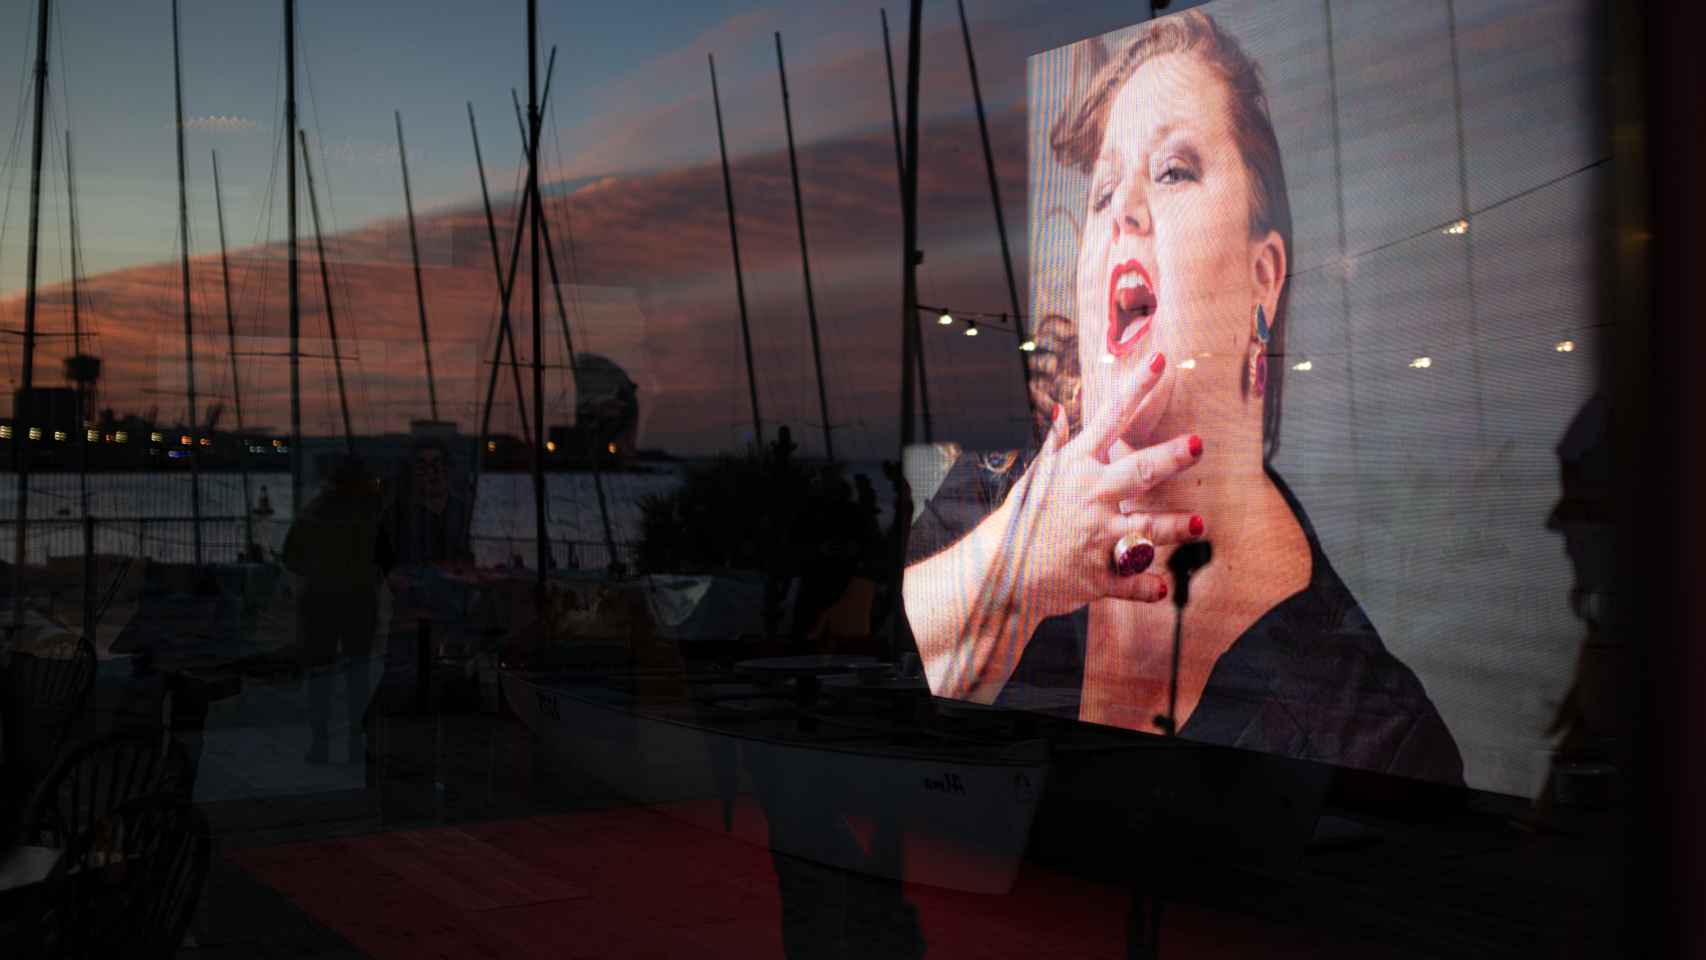 Detalle de la fotografía de Itziar, durante un homenaje póstumo a la actriz Itziar Castro, en el restaurante Red Fish